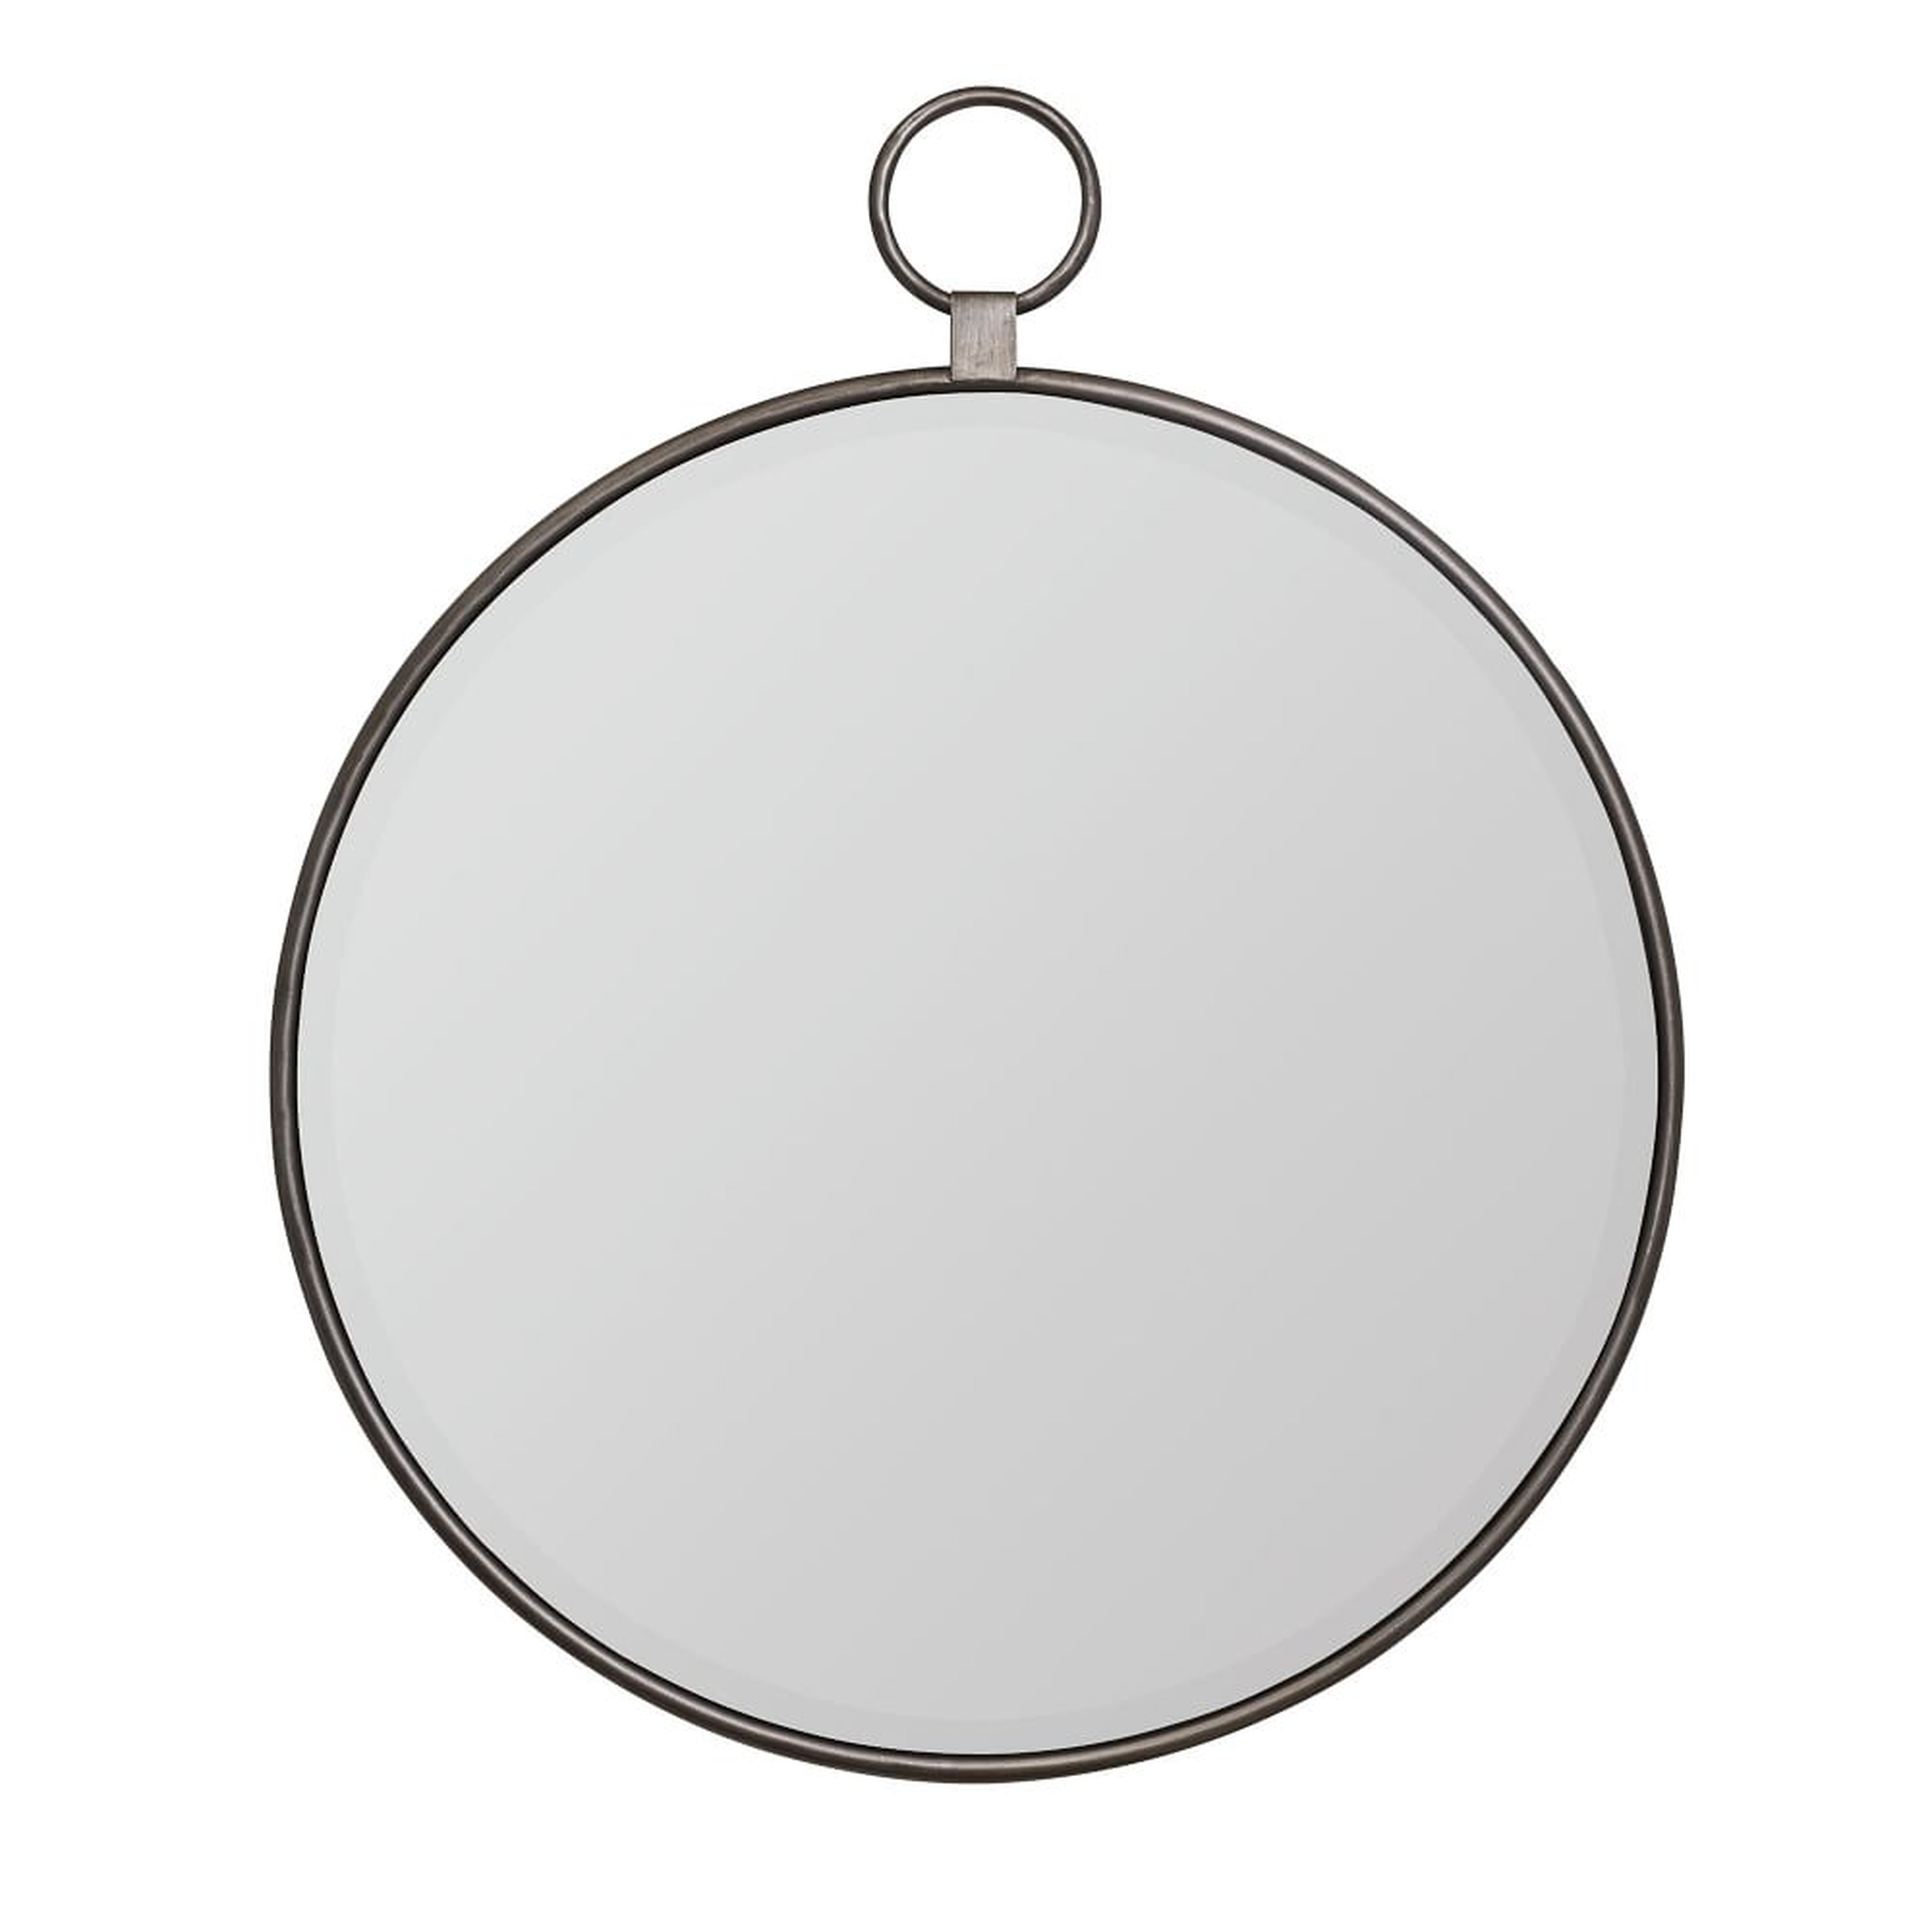 Round Loop Mirror, 25", Gray - West Elm